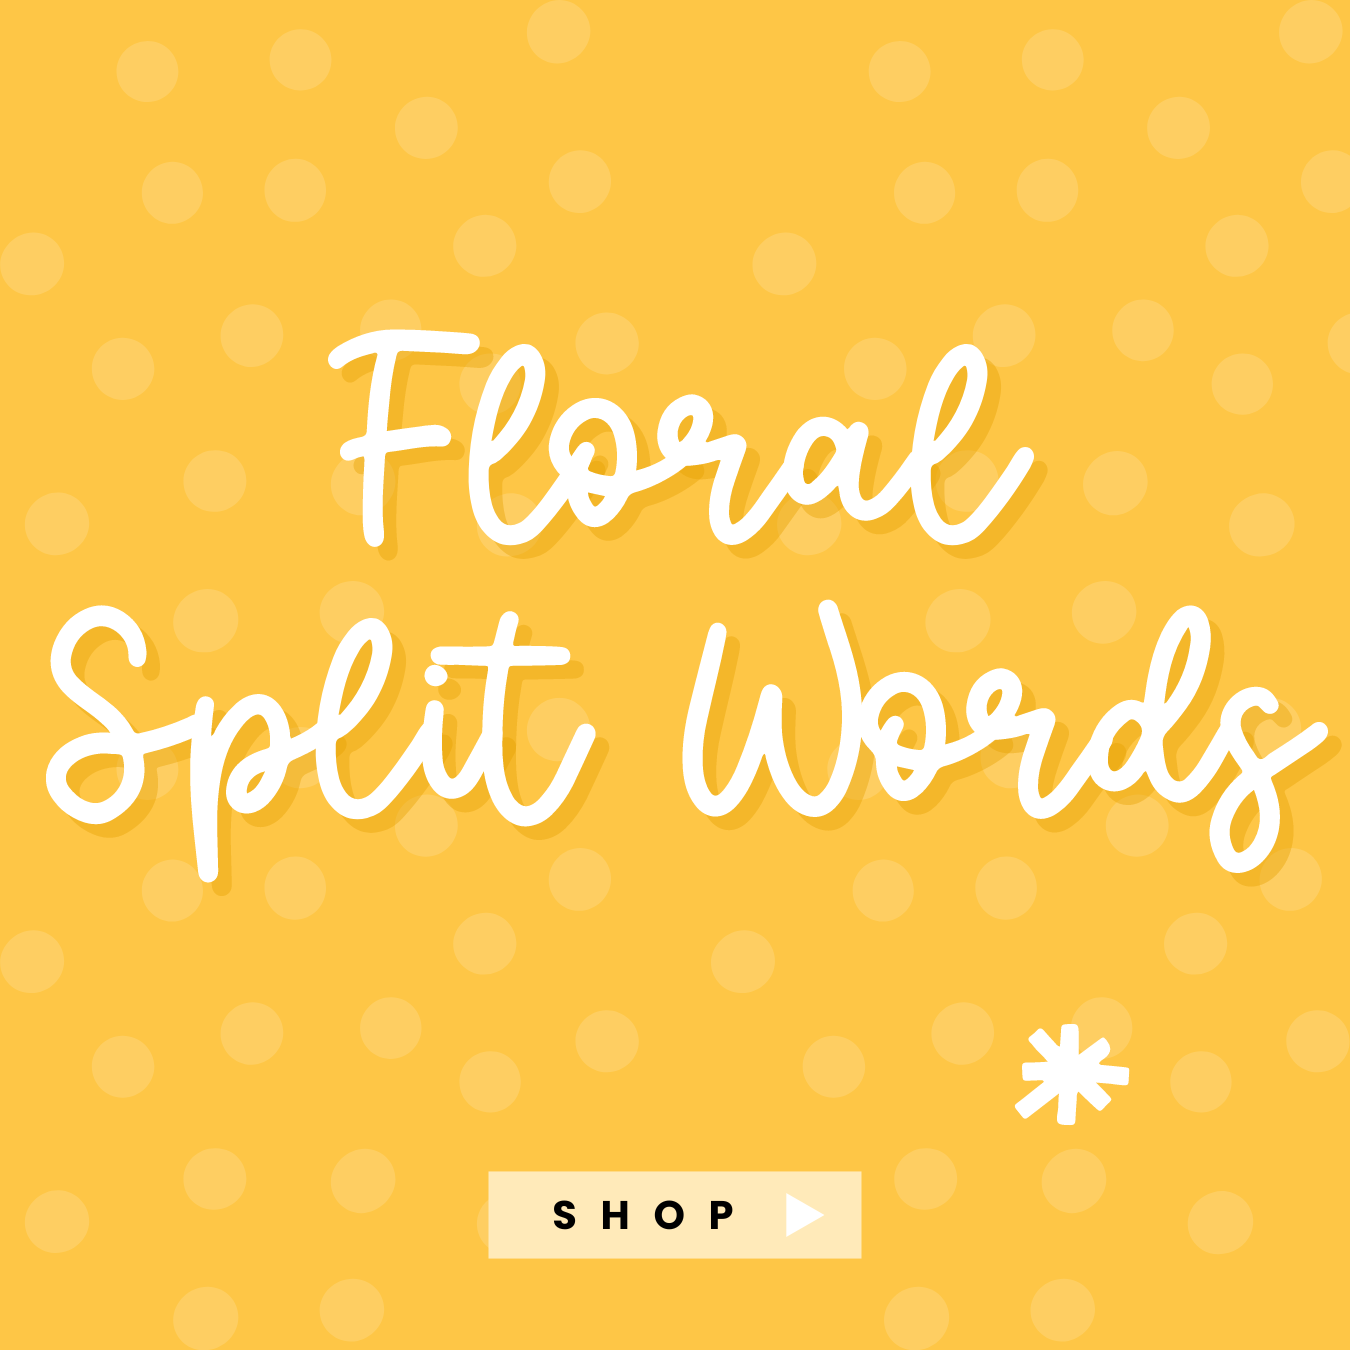 Floral Split Words